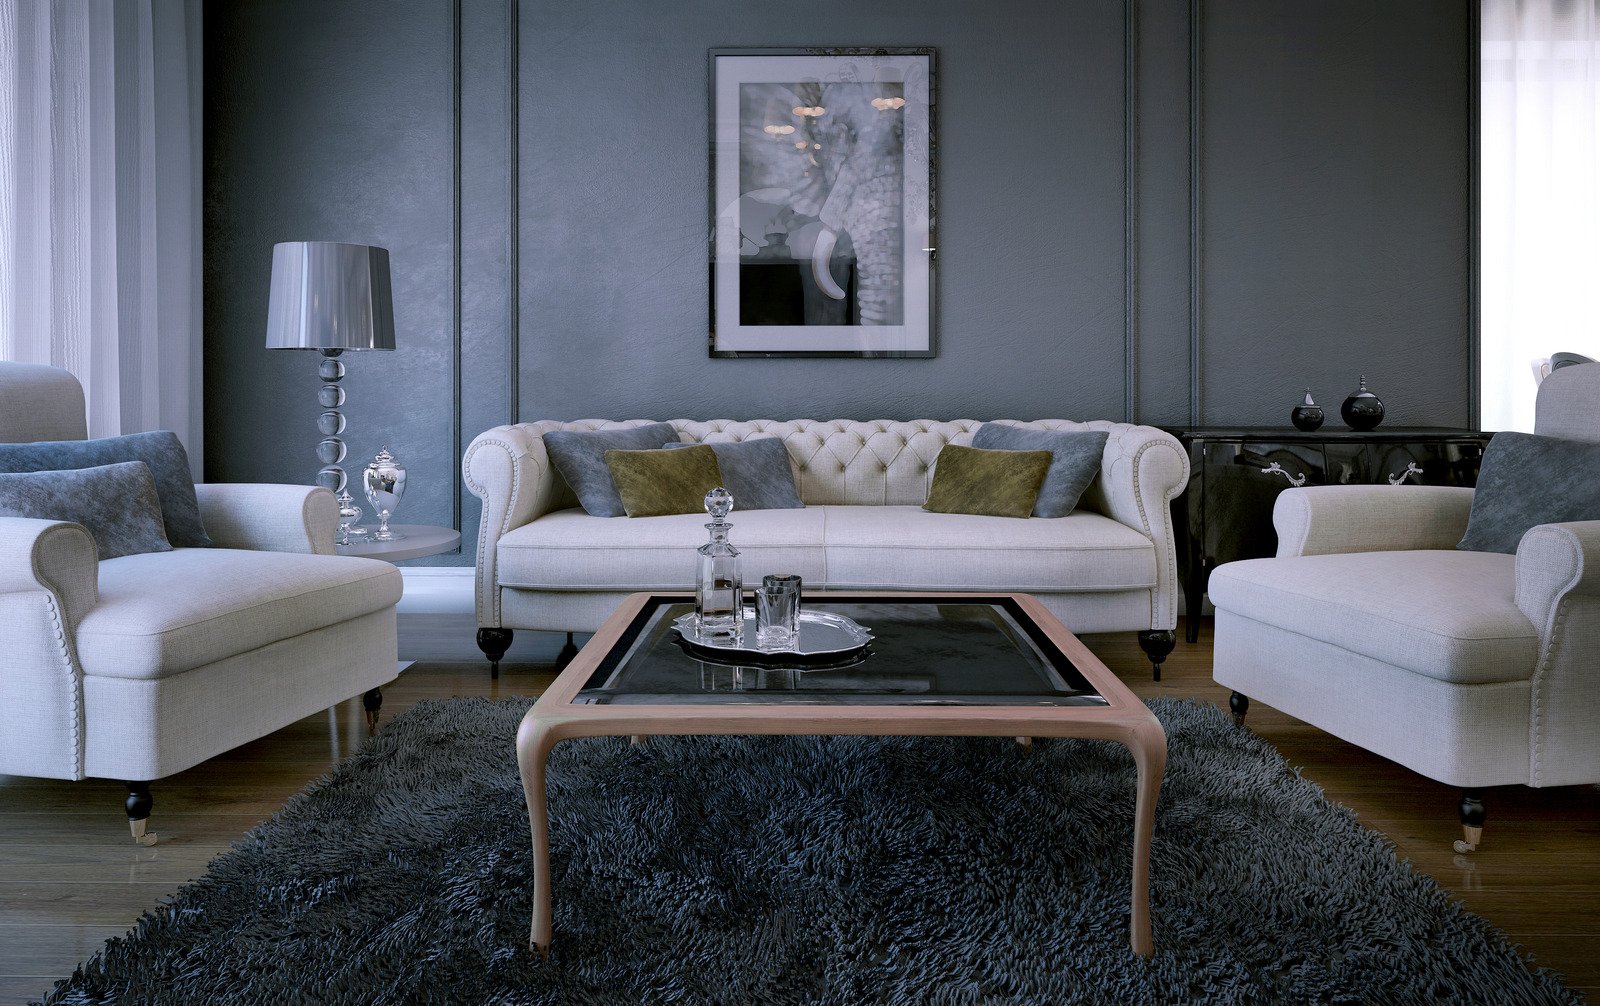 biała pikowana sofa, stolik kawowy, szare ściany w salonie